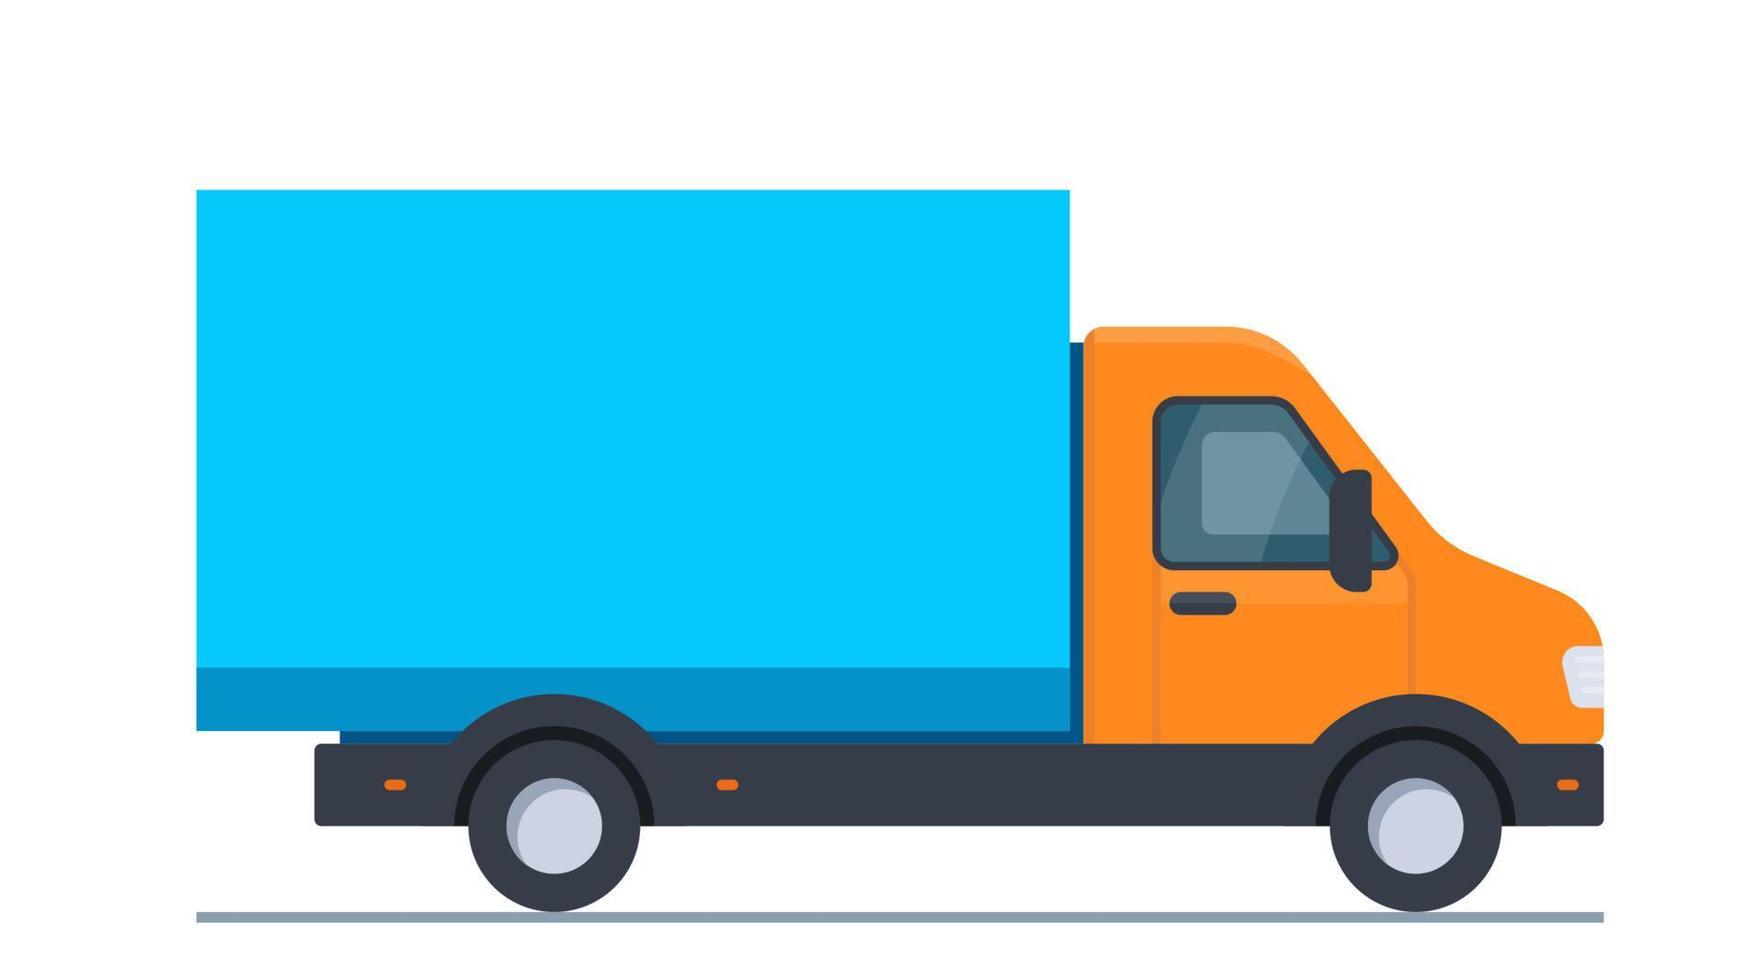 caminhão para transporte de mercadorias e materiais de construção, grande  volume e peso, entrega ao encomendar mercadorias. Caminhão de carga.  ilustração vetorial isolada no fundo branco. 15400367 Vetor no Vecteezy